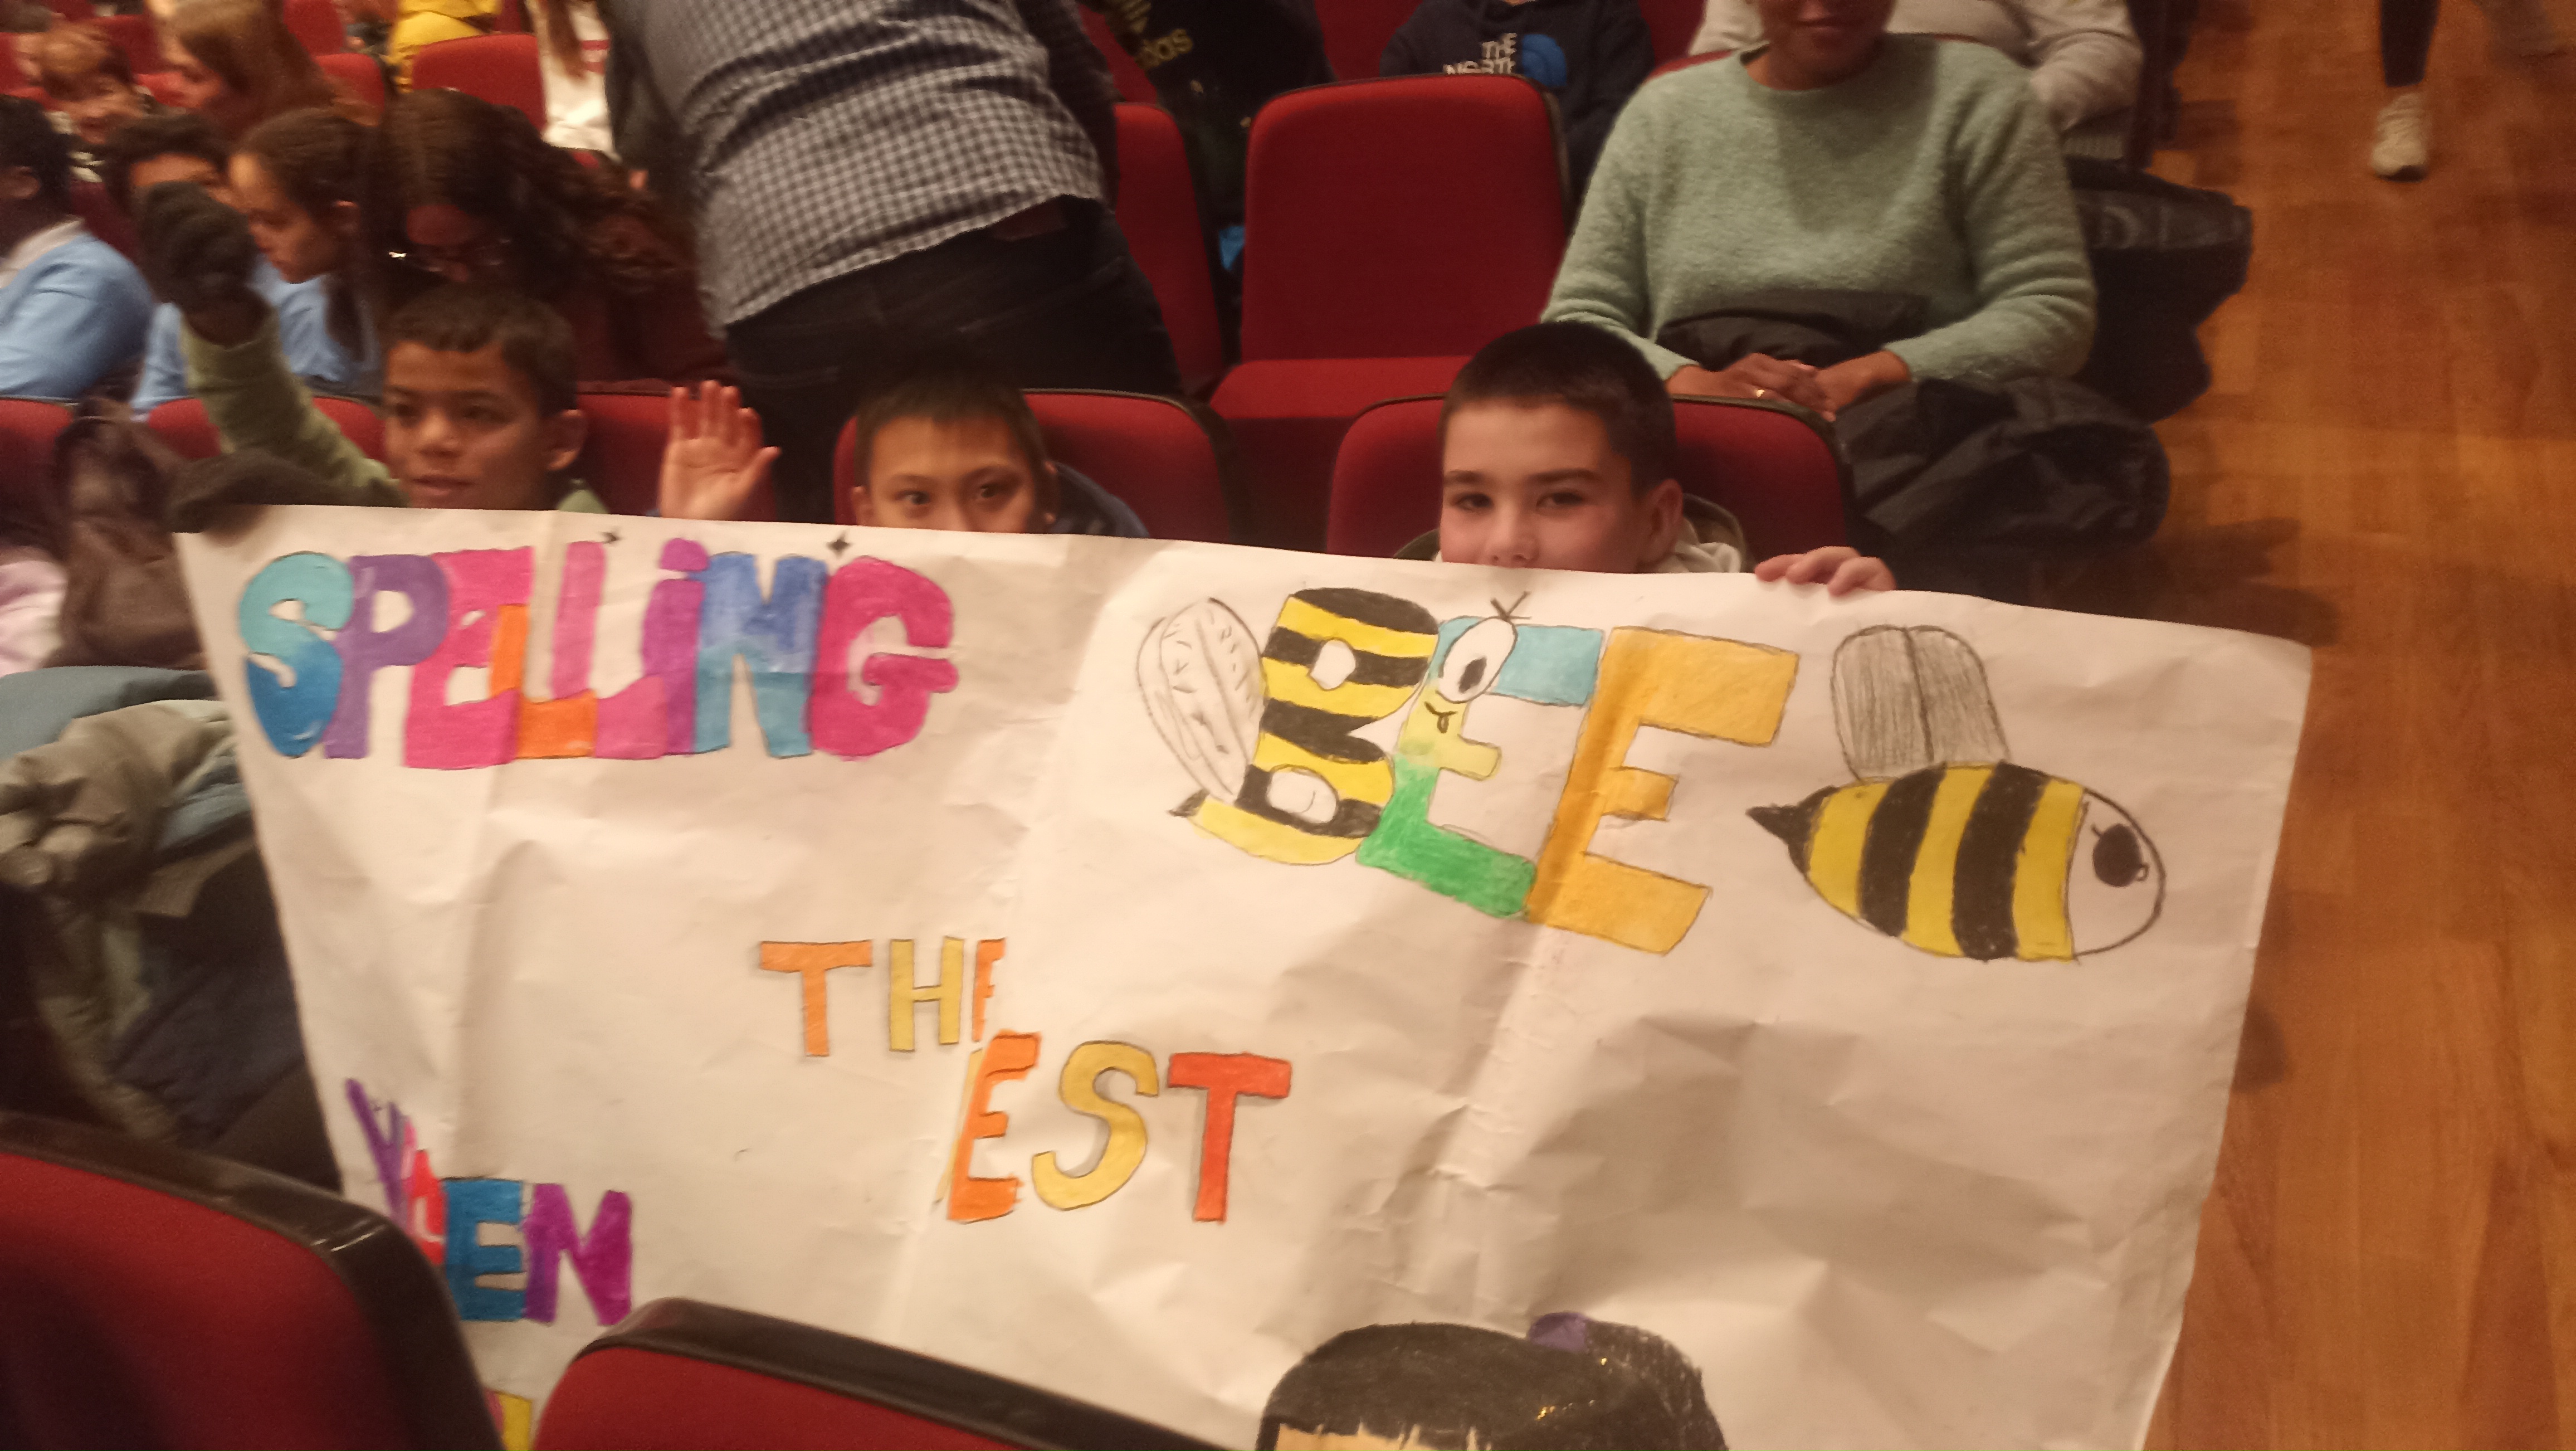 Spelling Bee (letreiatze lehiaketa ingelesez)